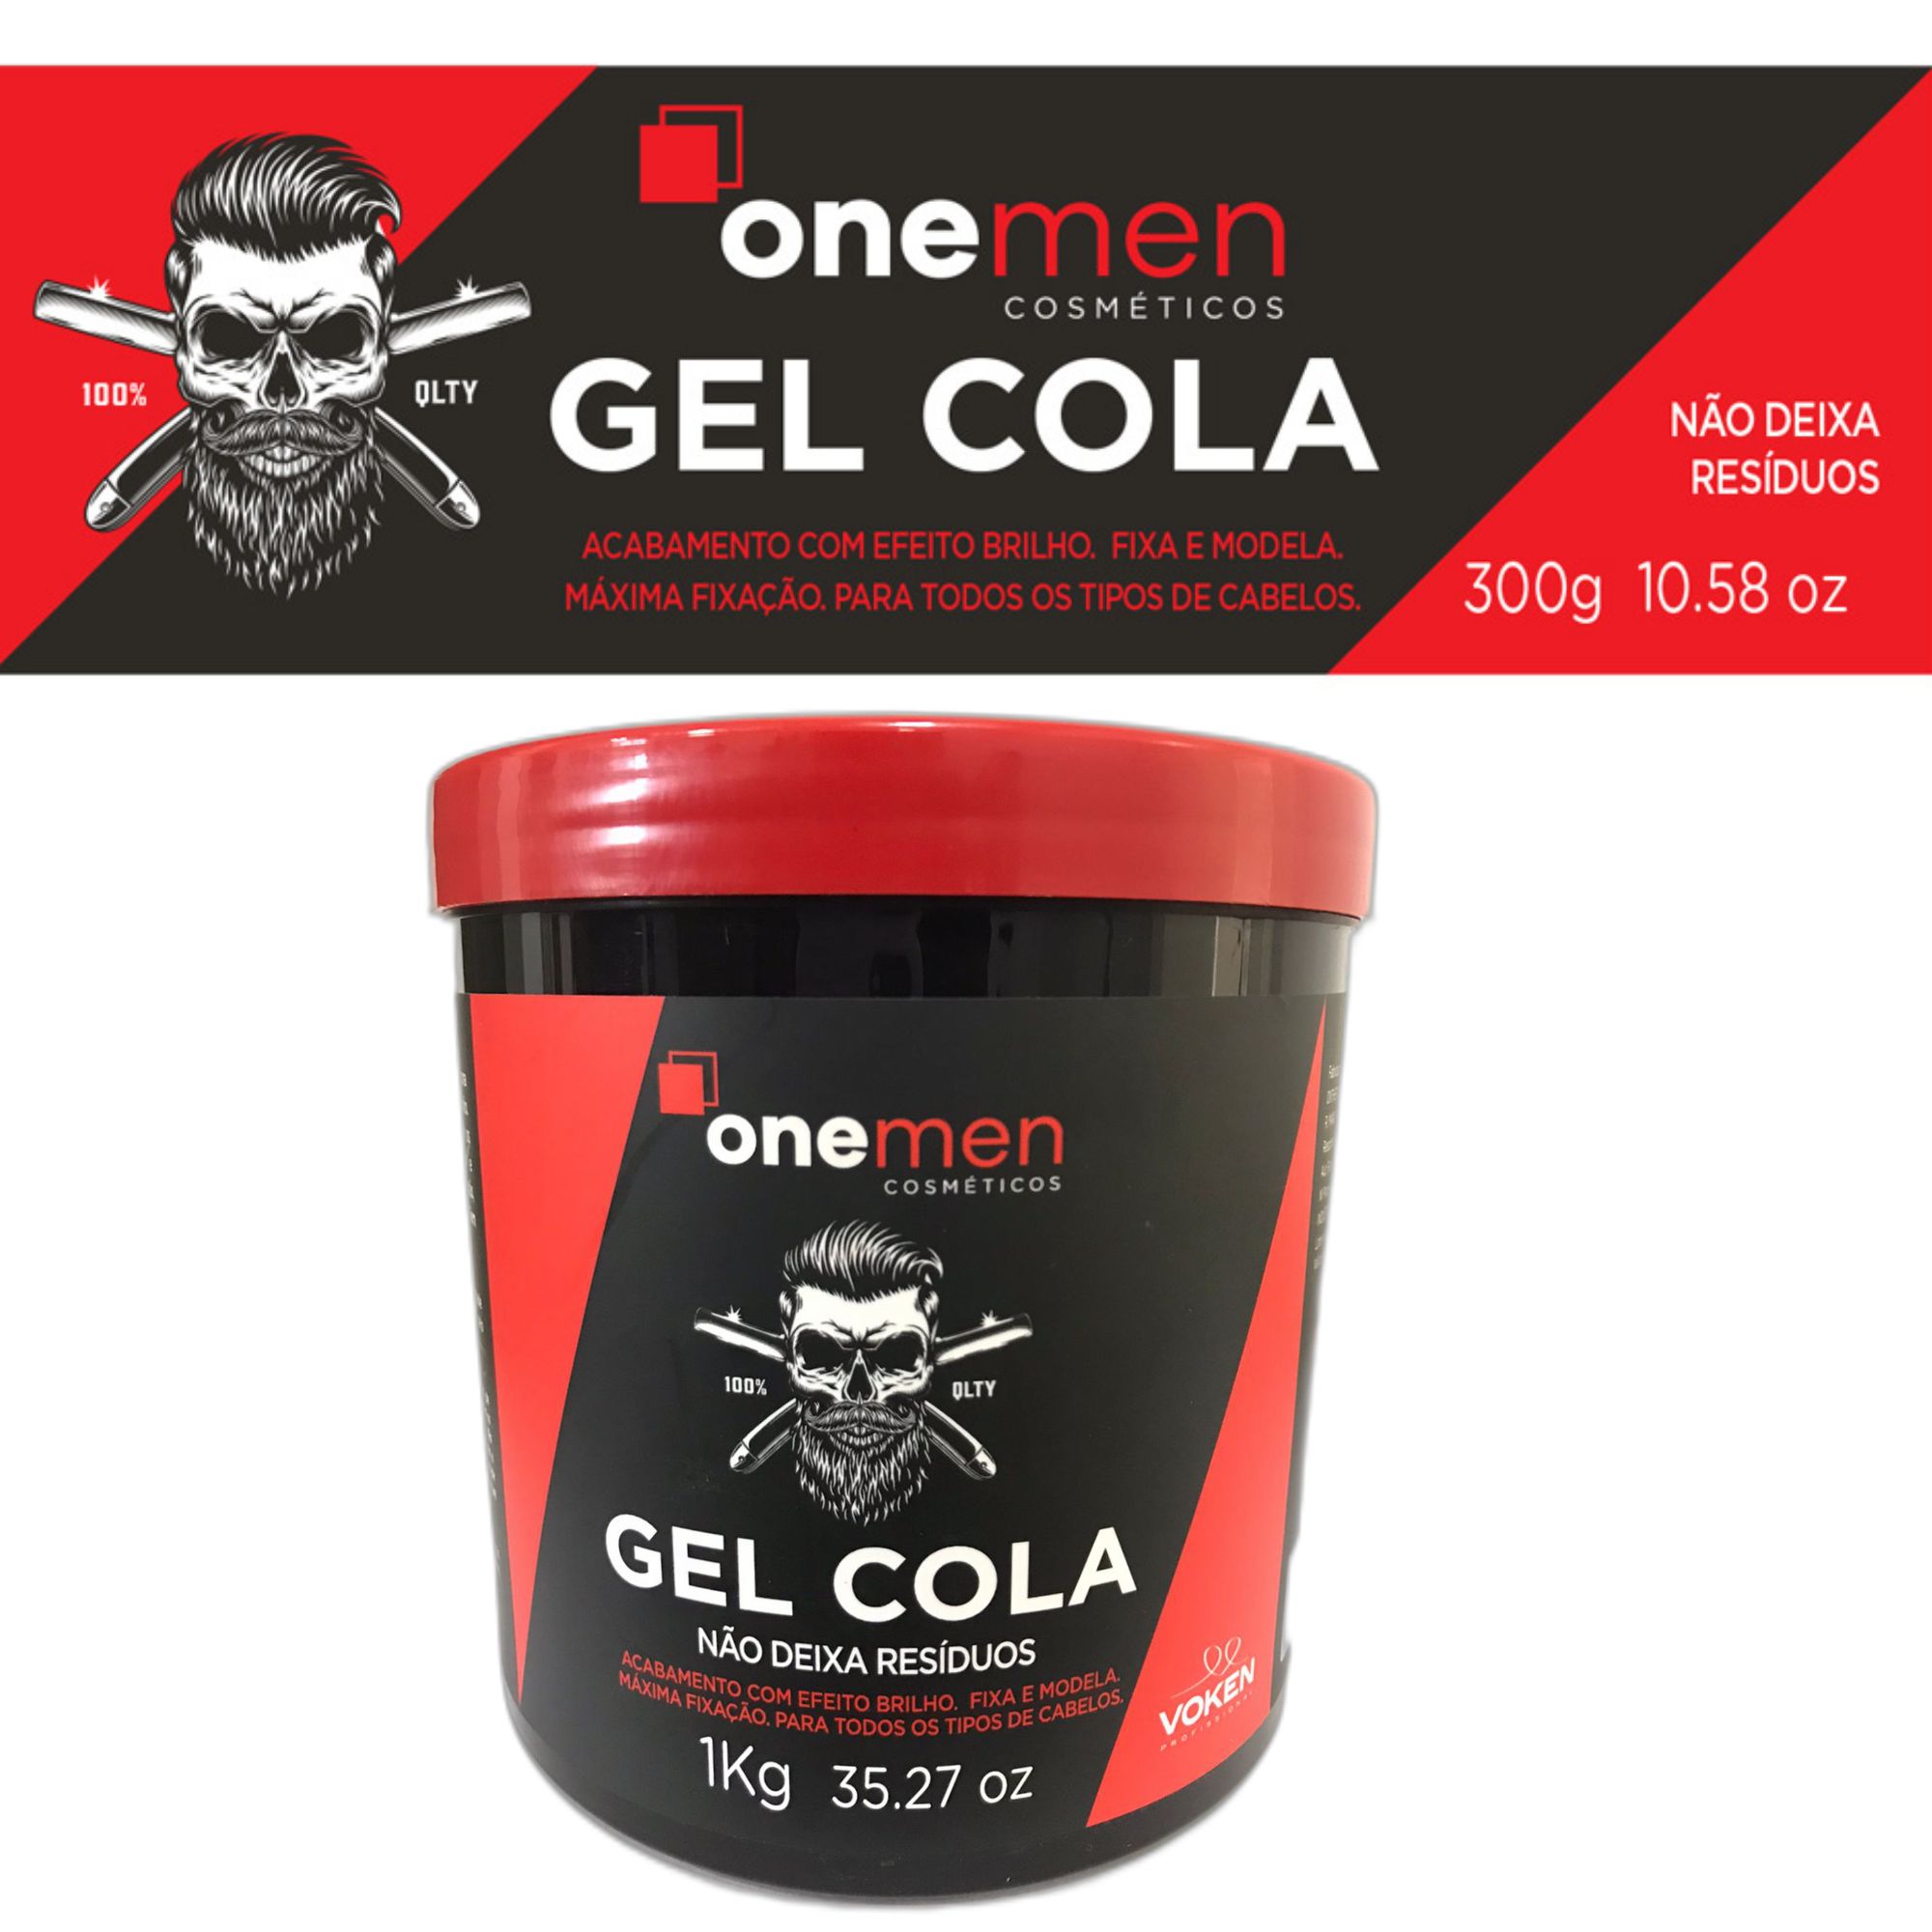 Voken - OneMen Gel Cola 1kg